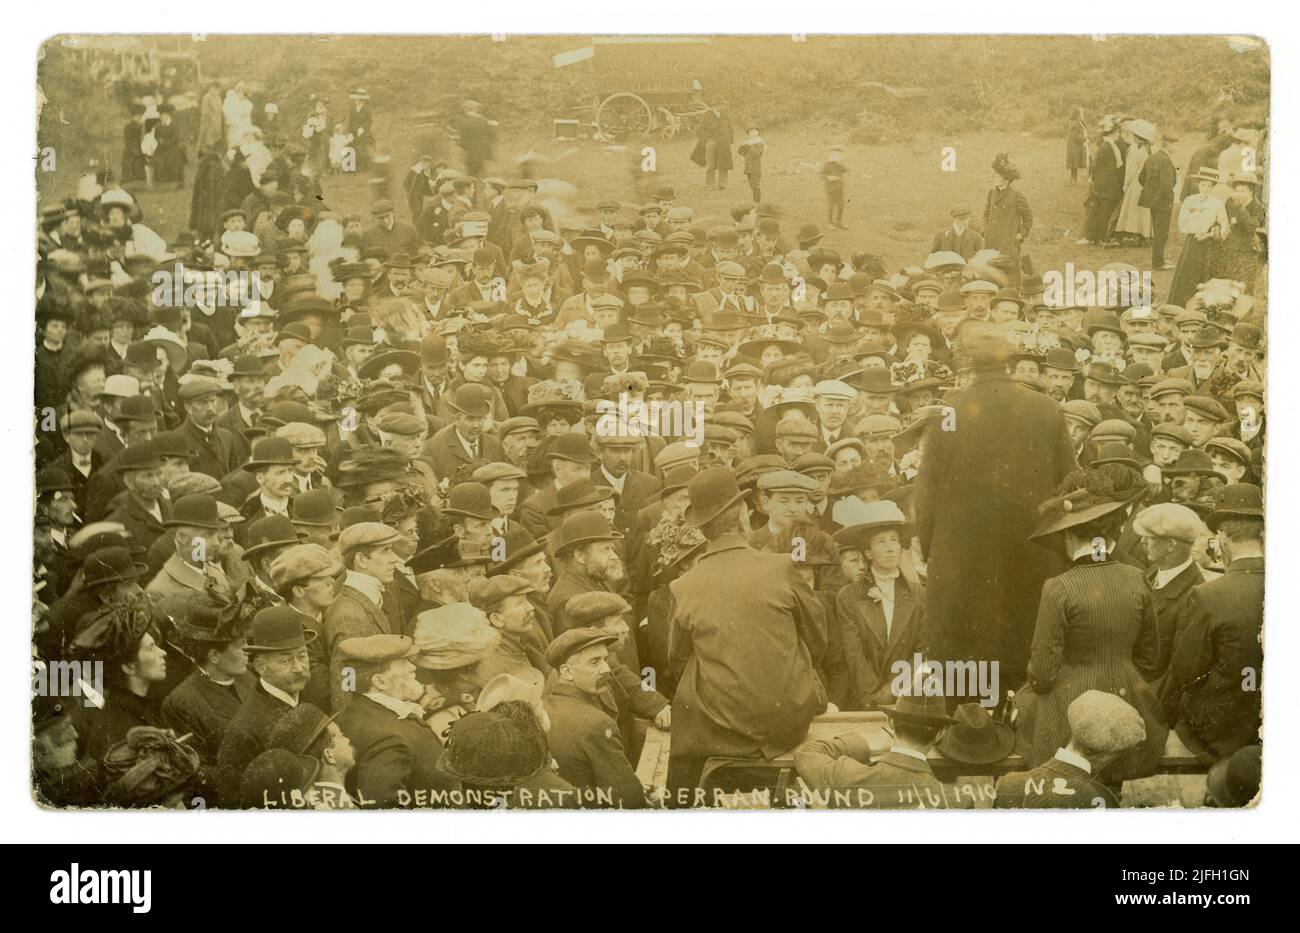 Era edoardiana, cartolina storica della Cornovaglia di grande folla si riunì per una dimostrazione liberale a Perran Round o St Piran's Round (un anfiteatro medievale) vicino alla frazione di Rose, Perranporth, Cornovaglia, Inghilterra, Regno Unito datata 11 giugno 1910. Foto Stock